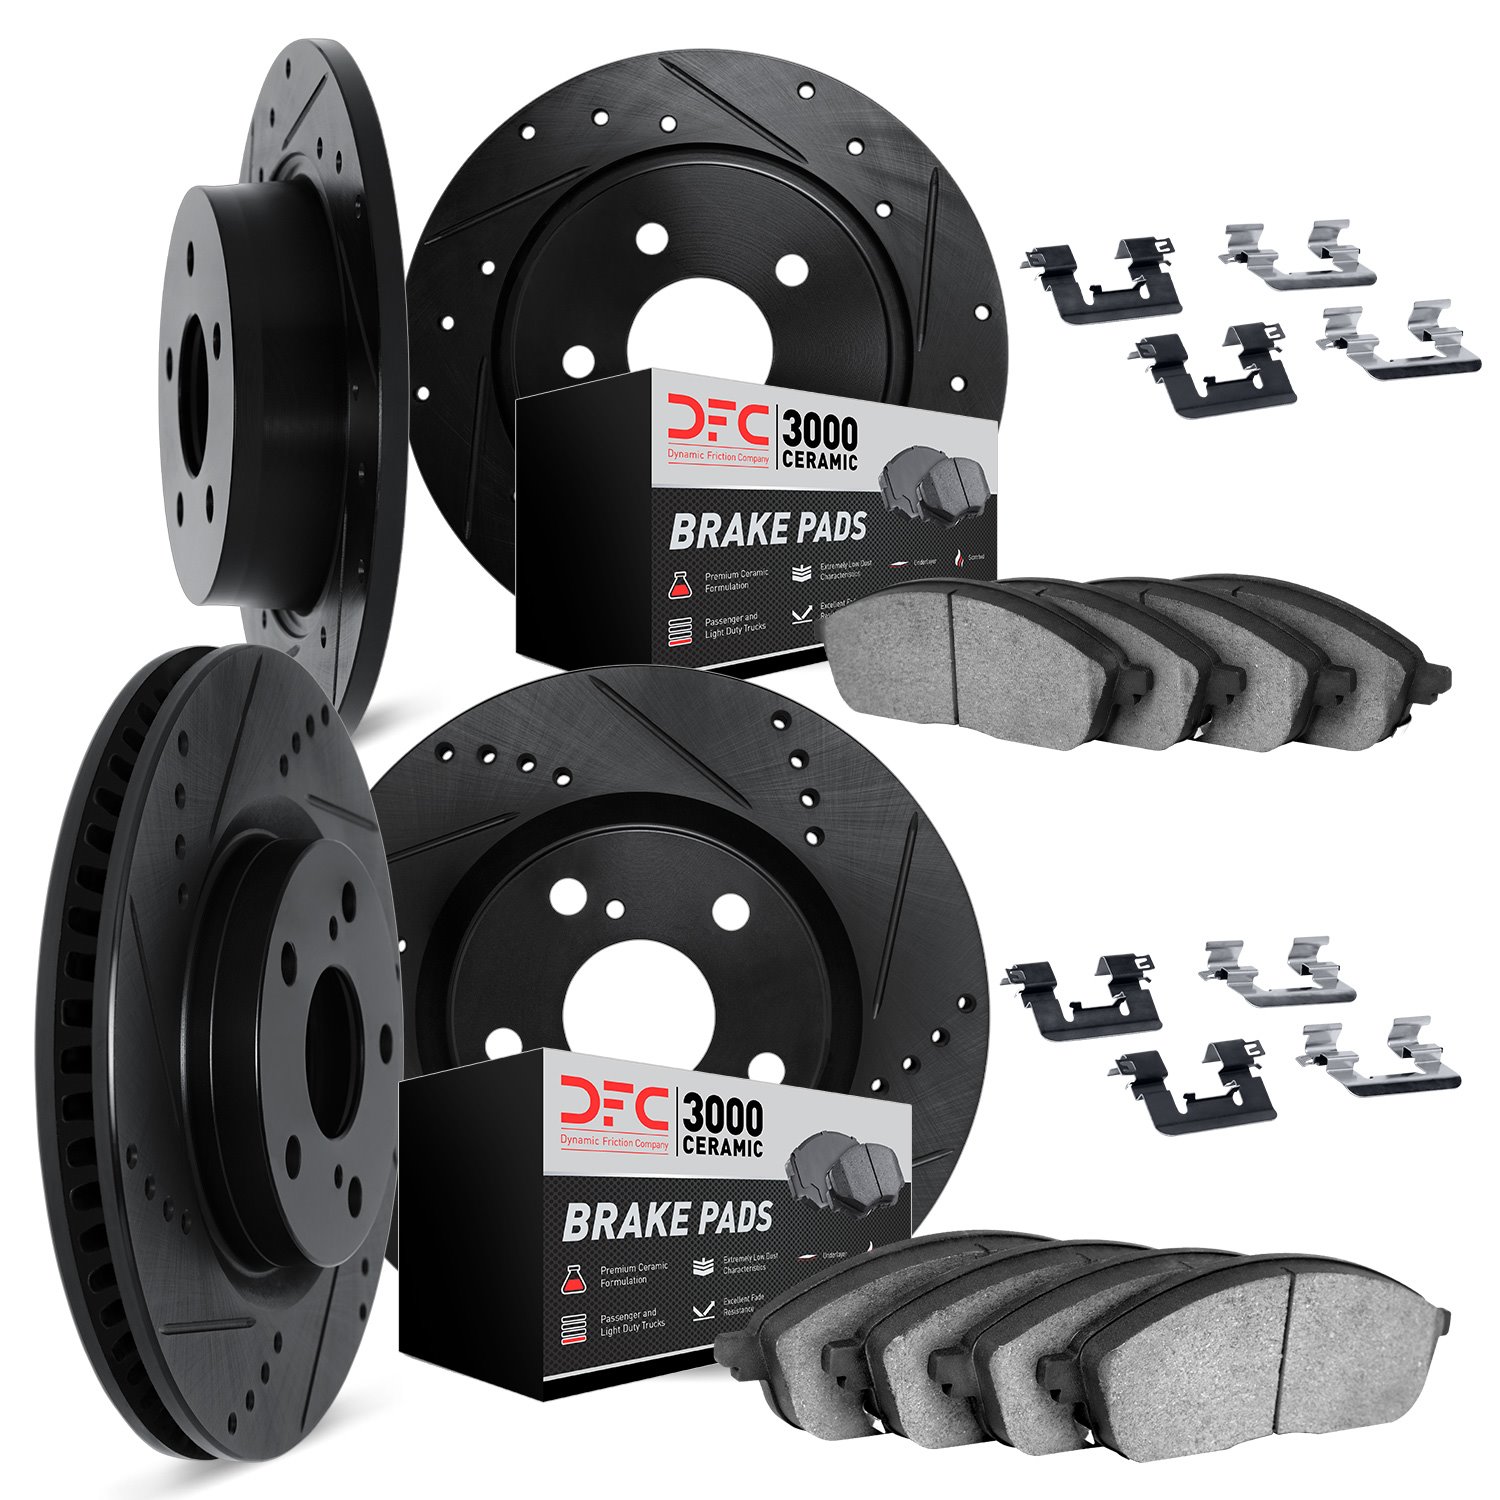 8314-72039 Drilled/Slotted Brake Rotors with 3000-Series Ceramic Brake Pads Kit & Hardware [Black], 2004-2012 Mitsubishi, Positi